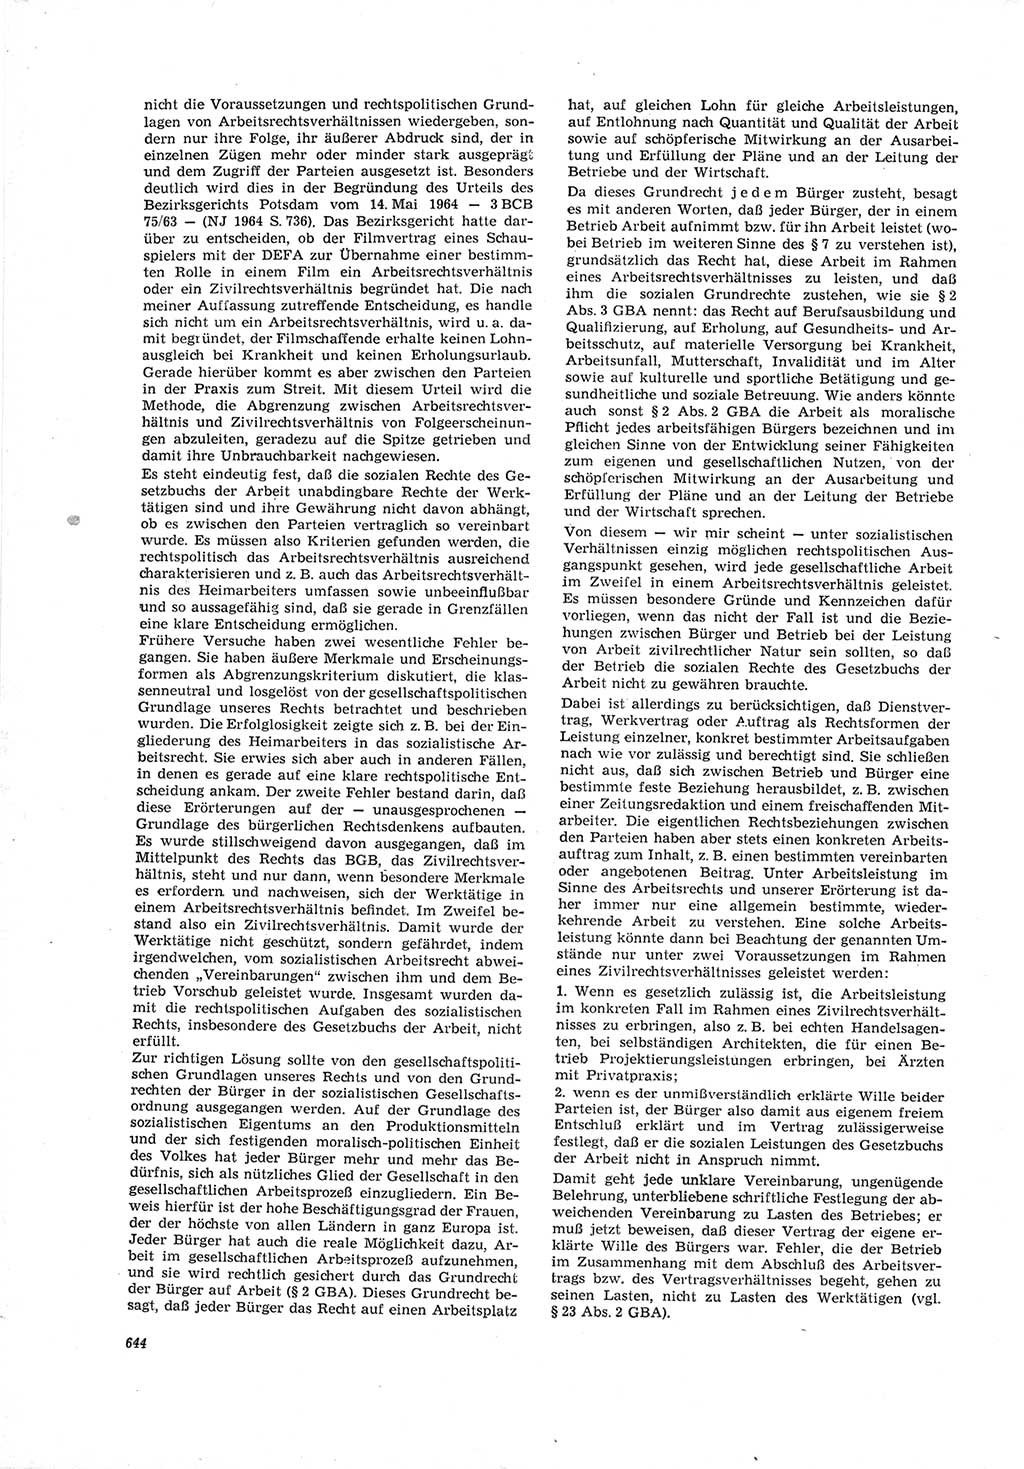 Neue Justiz (NJ), Zeitschrift für Recht und Rechtswissenschaft [Deutsche Demokratische Republik (DDR)], 19. Jahrgang 1965, Seite 644 (NJ DDR 1965, S. 644)